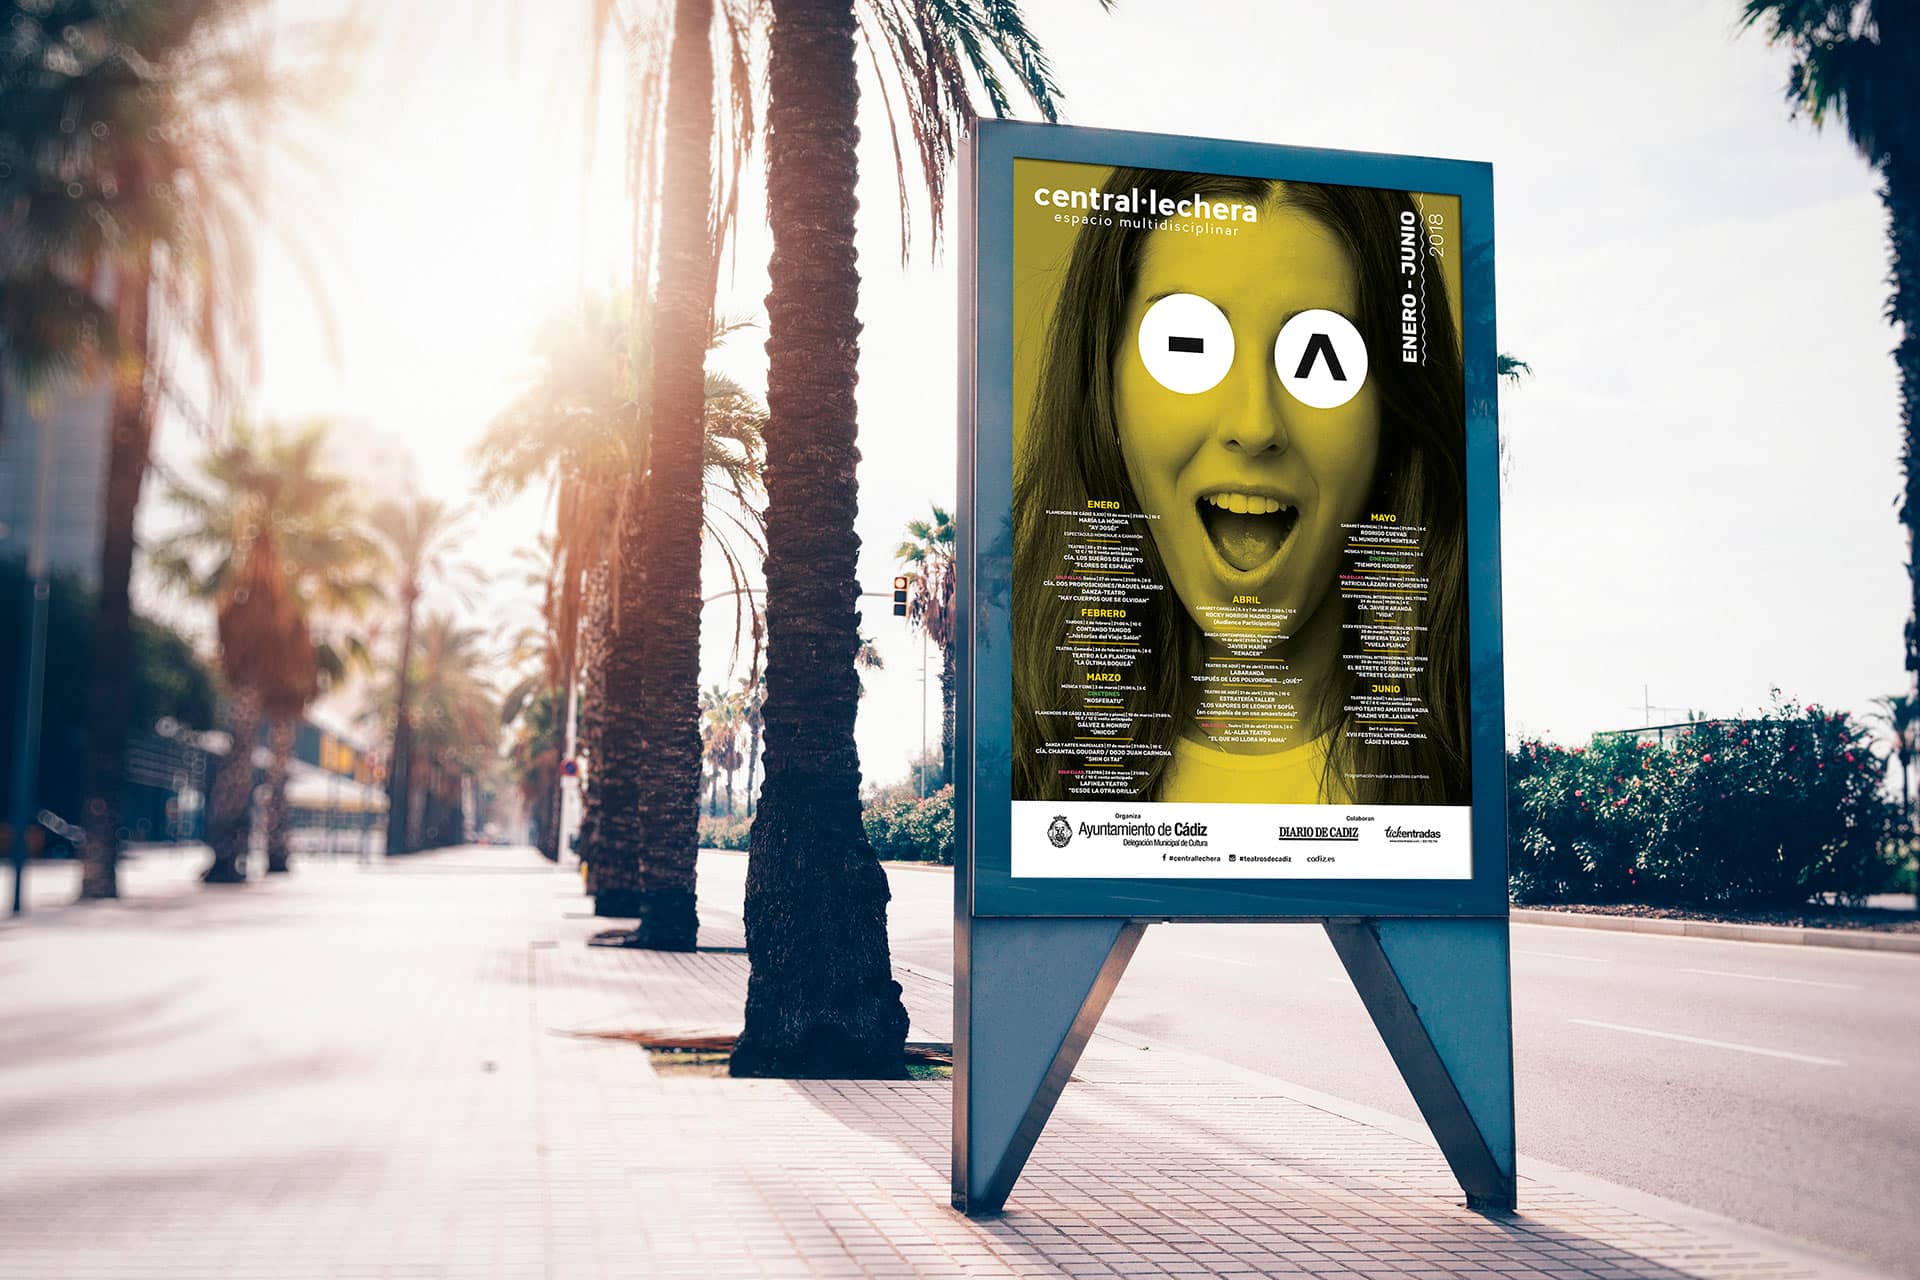 Mupi -Campaña de publicidad - Sala Central Lechera (Enero - Junio 2018)